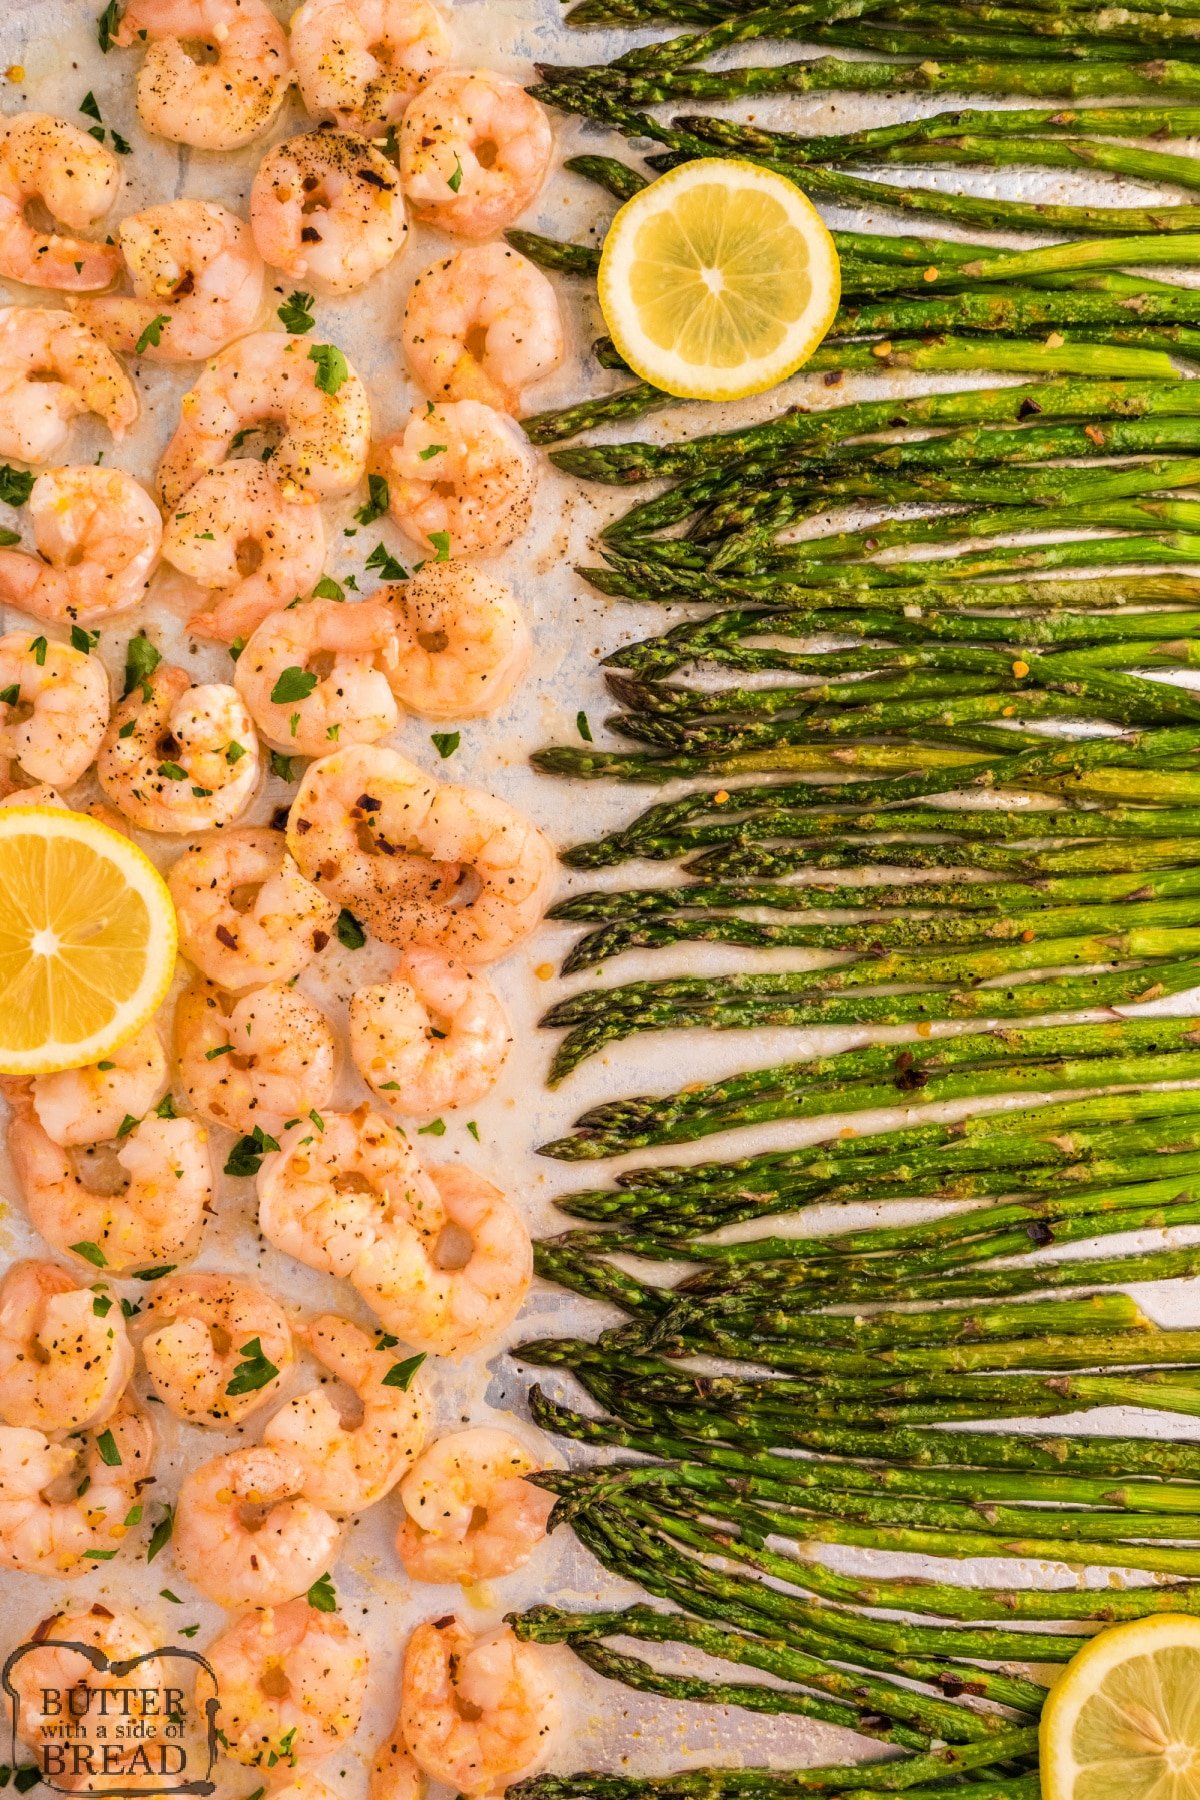 Shrimp and asparagus with lemon. 